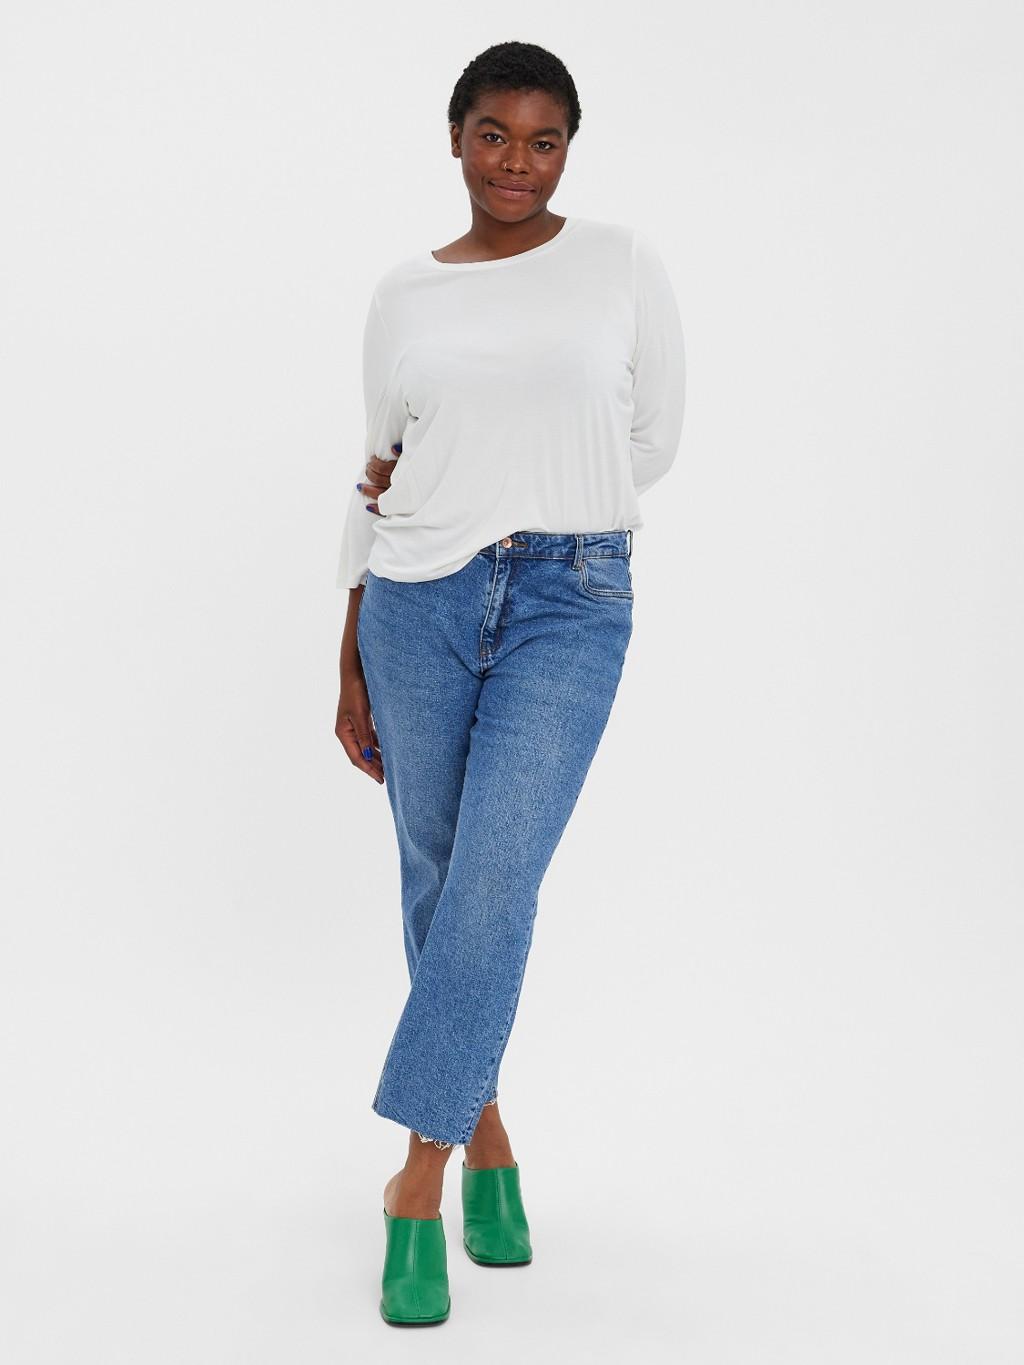 Miniatuur Adviseren Kanon Jeans: zo kies je de ideale broek voor je figuur - Libelle